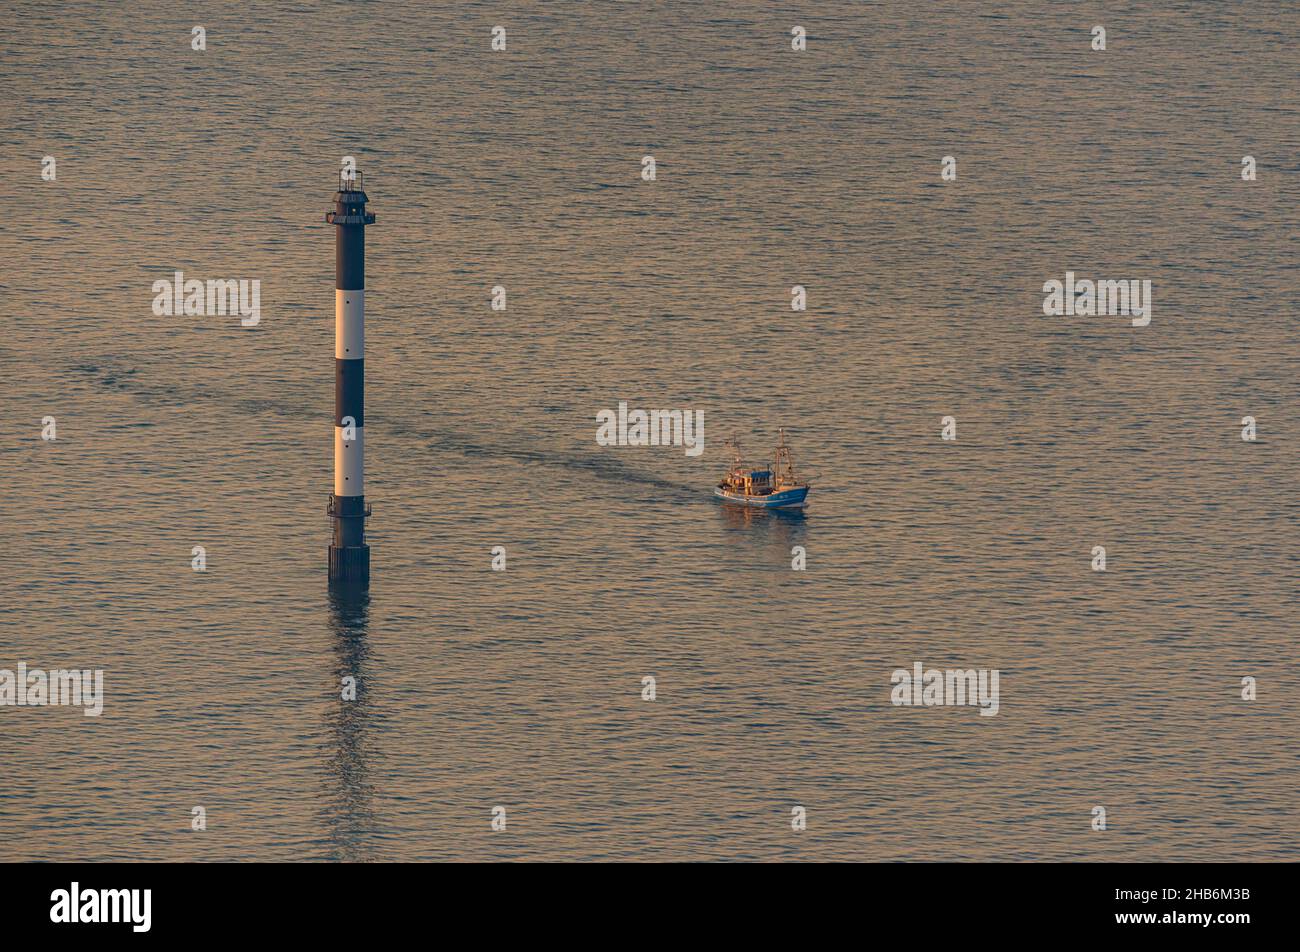 Coupe-pêche passant un marqueur de fairway sur la mer du Nord dans la région de l'estuaire de l'Elbe, photo aérienne, Allemagne, Basse-Saxe, Cuxhaven Banque D'Images